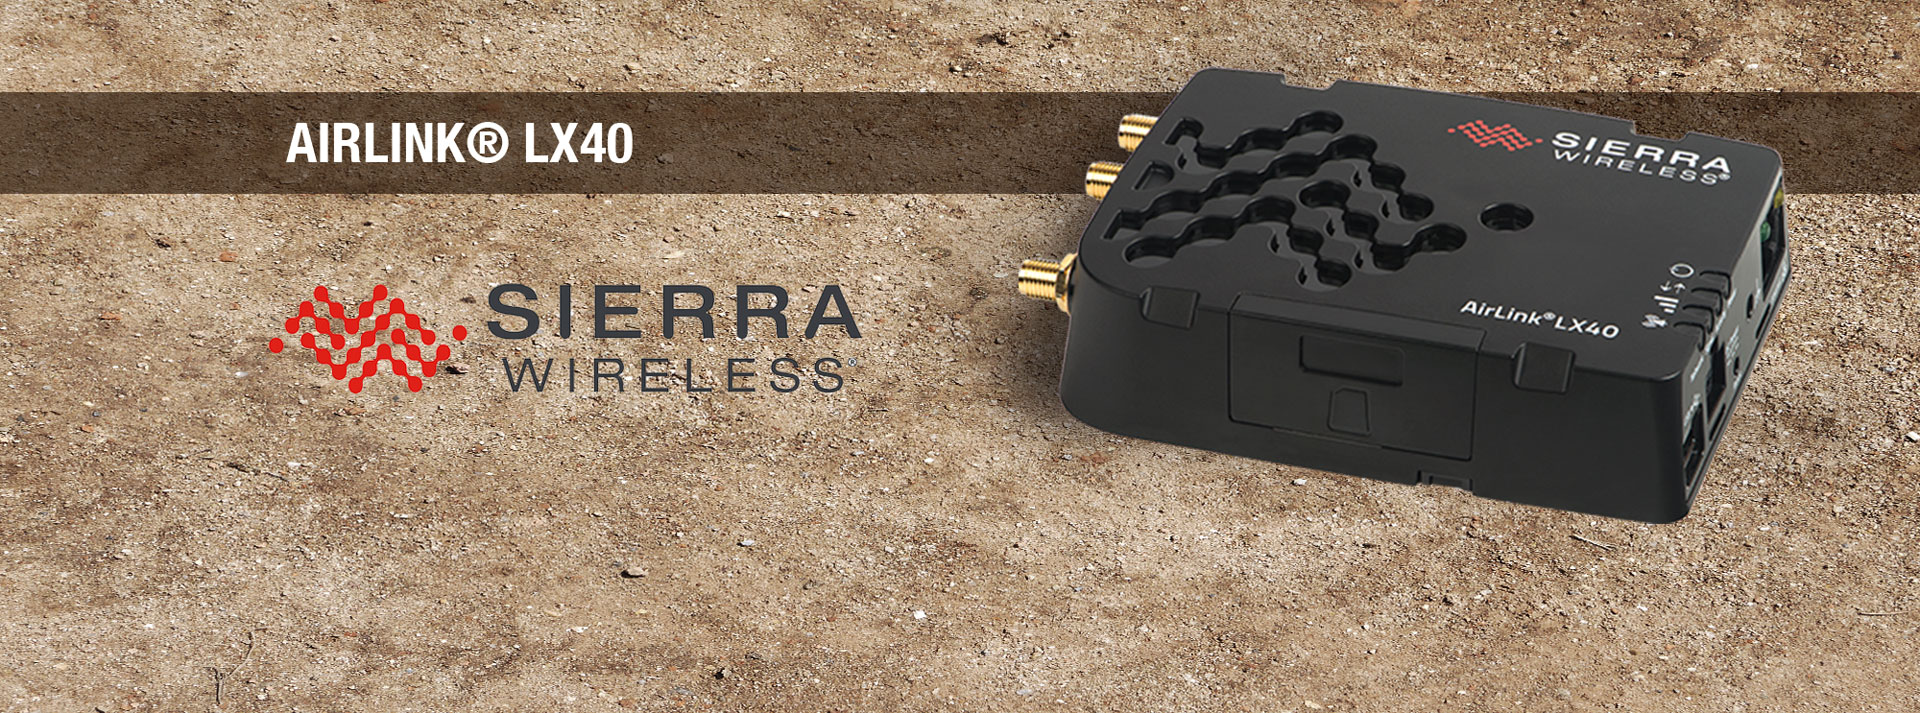 Sierra Wireless Airlink LX40